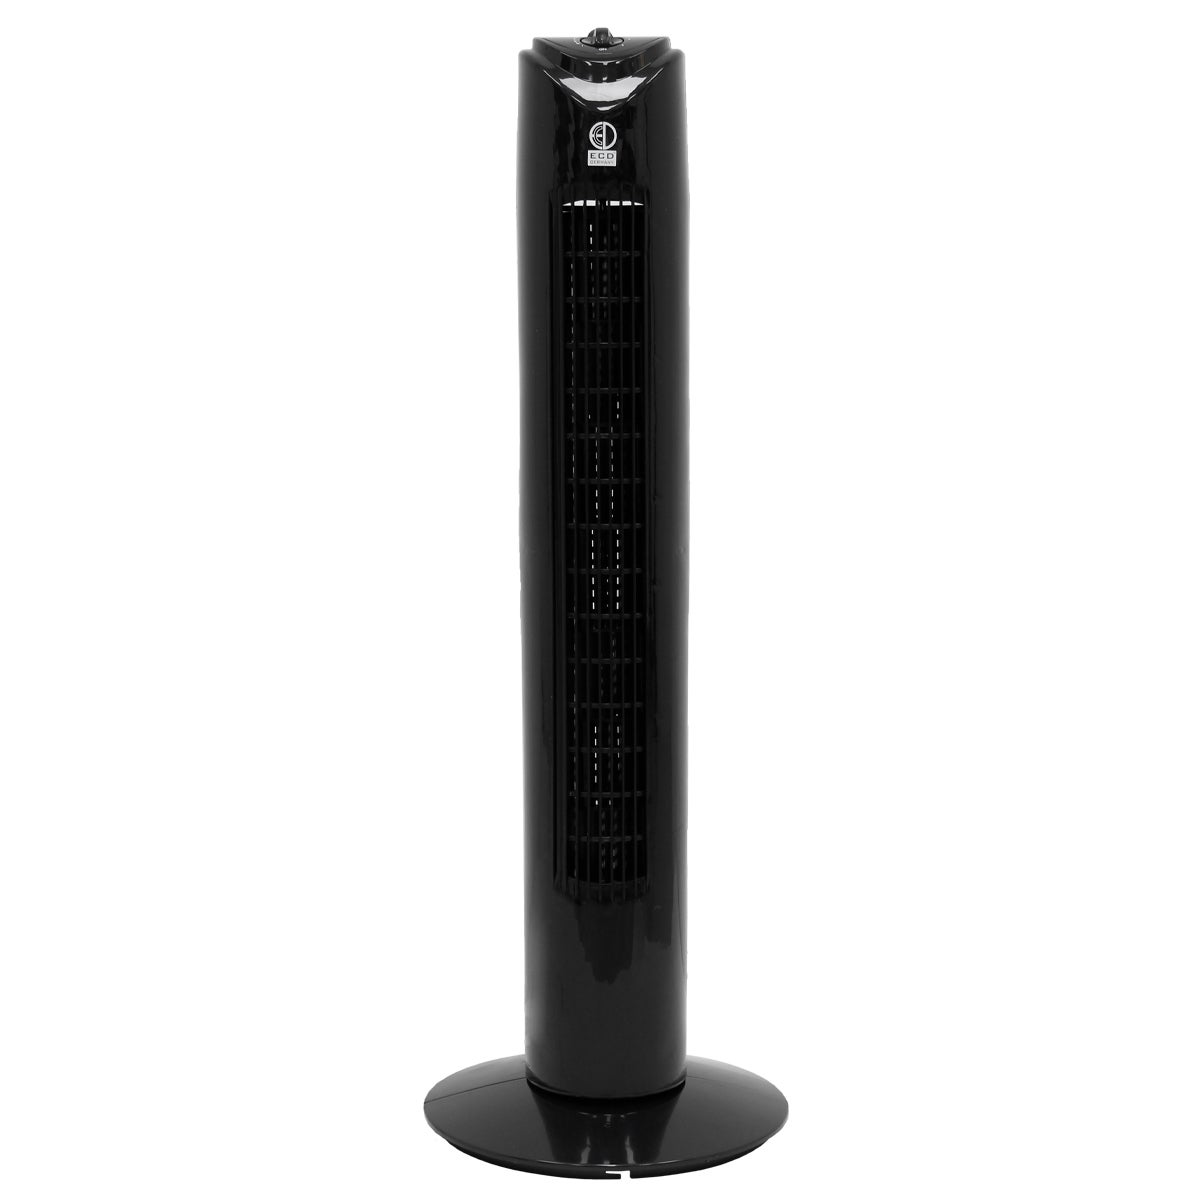 Thomson THVEL421T modalità silenziosa 45 W 3 velocità Ventilatore a torre oscillante 83 cm di altezza timer display LED 